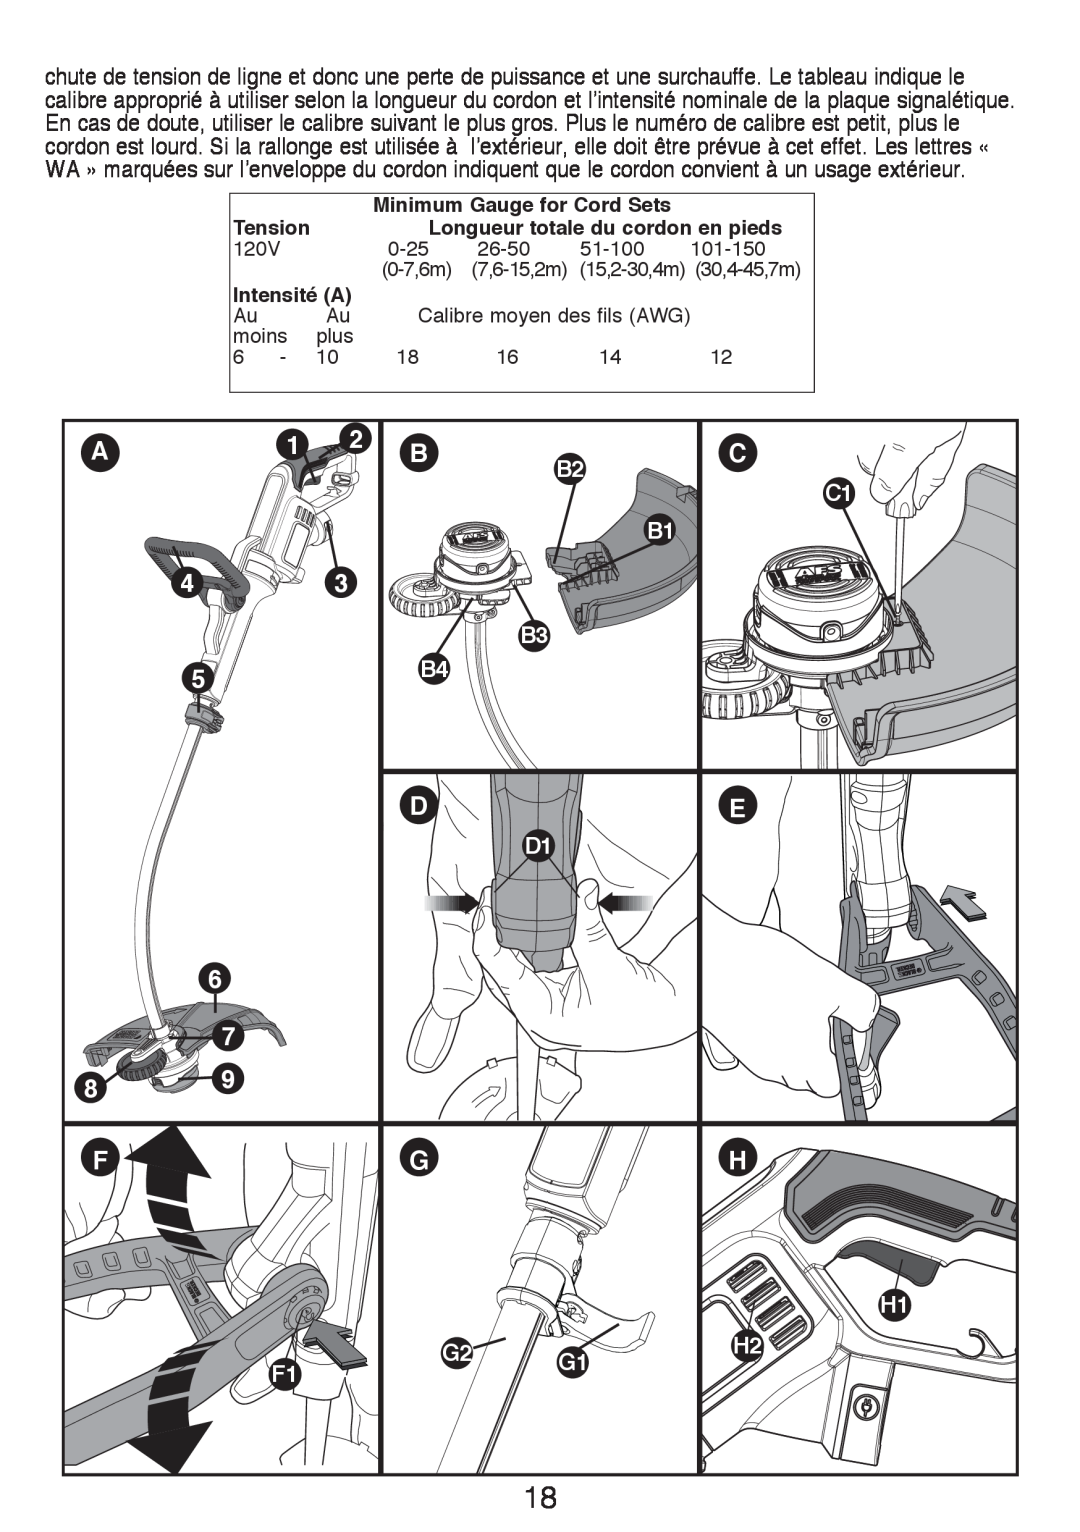 Black & Decker GH3000R instruction manual Longueur totale du cordon en pieds, Intensité A 